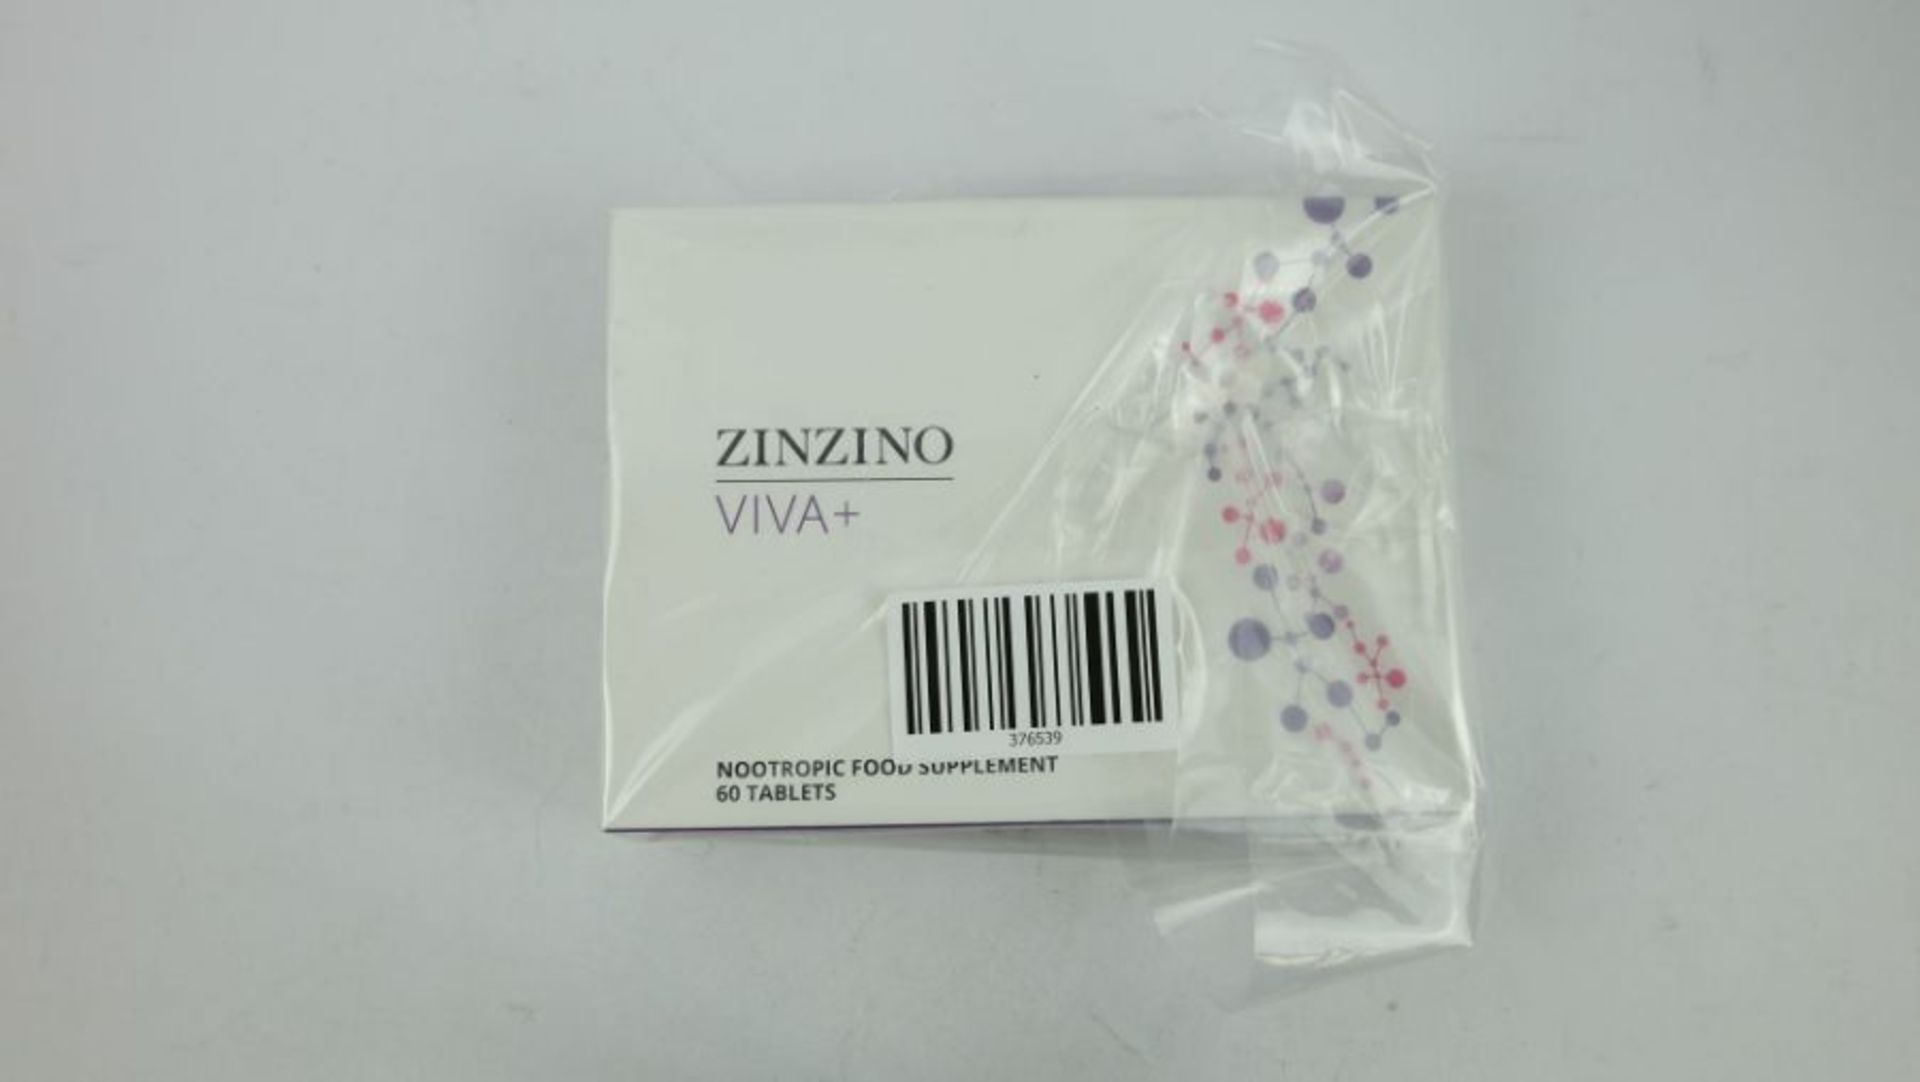 Two, Zinzino VIVA+ Nootropic Food Supplement 60 Tablets, Exp 11/2023